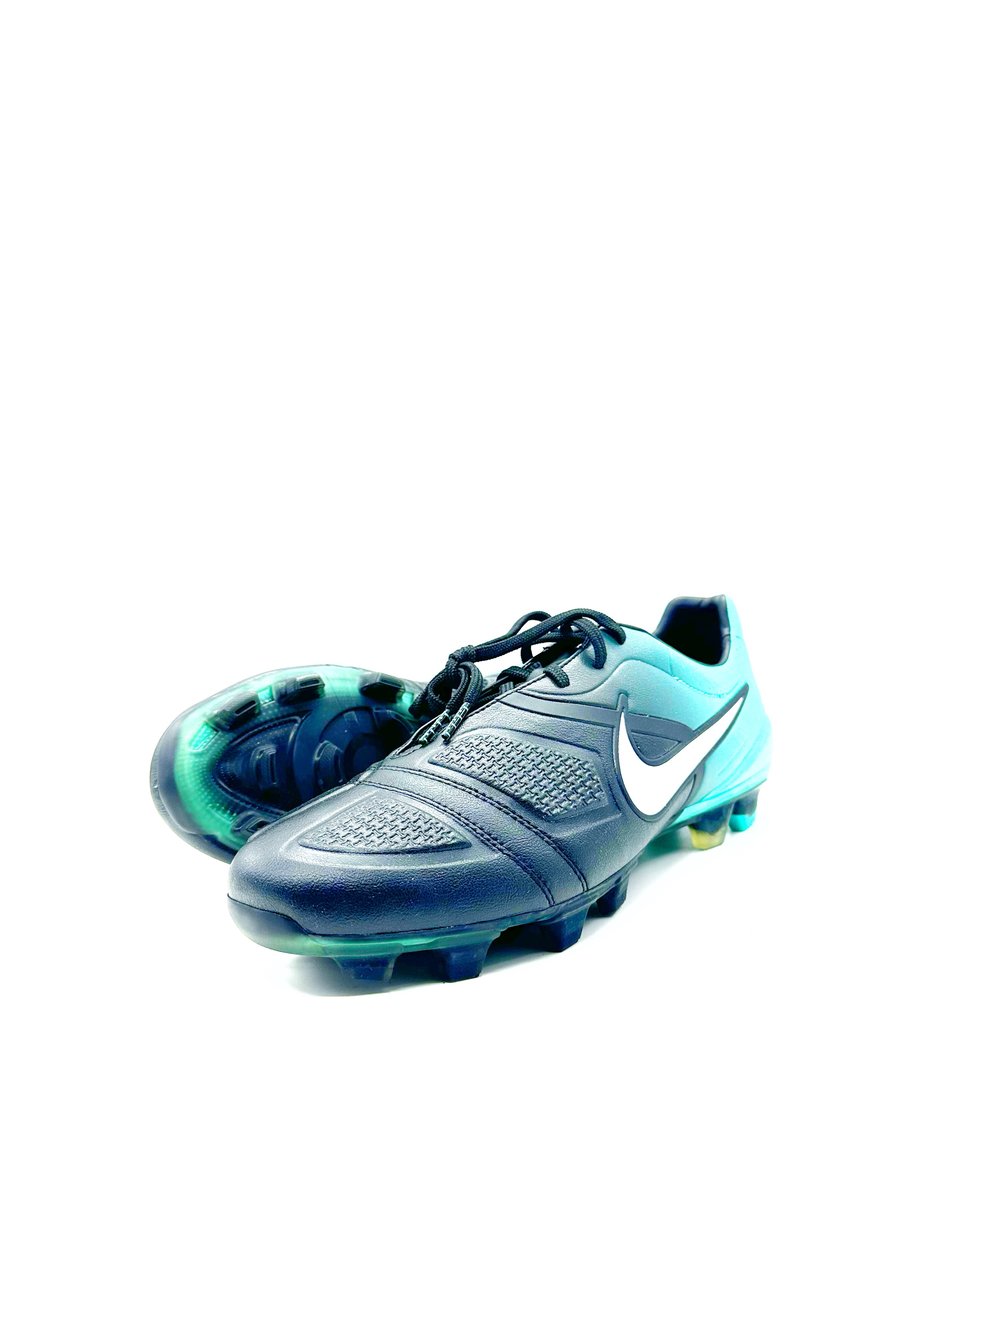 Image of Nike Ctr360 Maestri FG BLUE BLACK